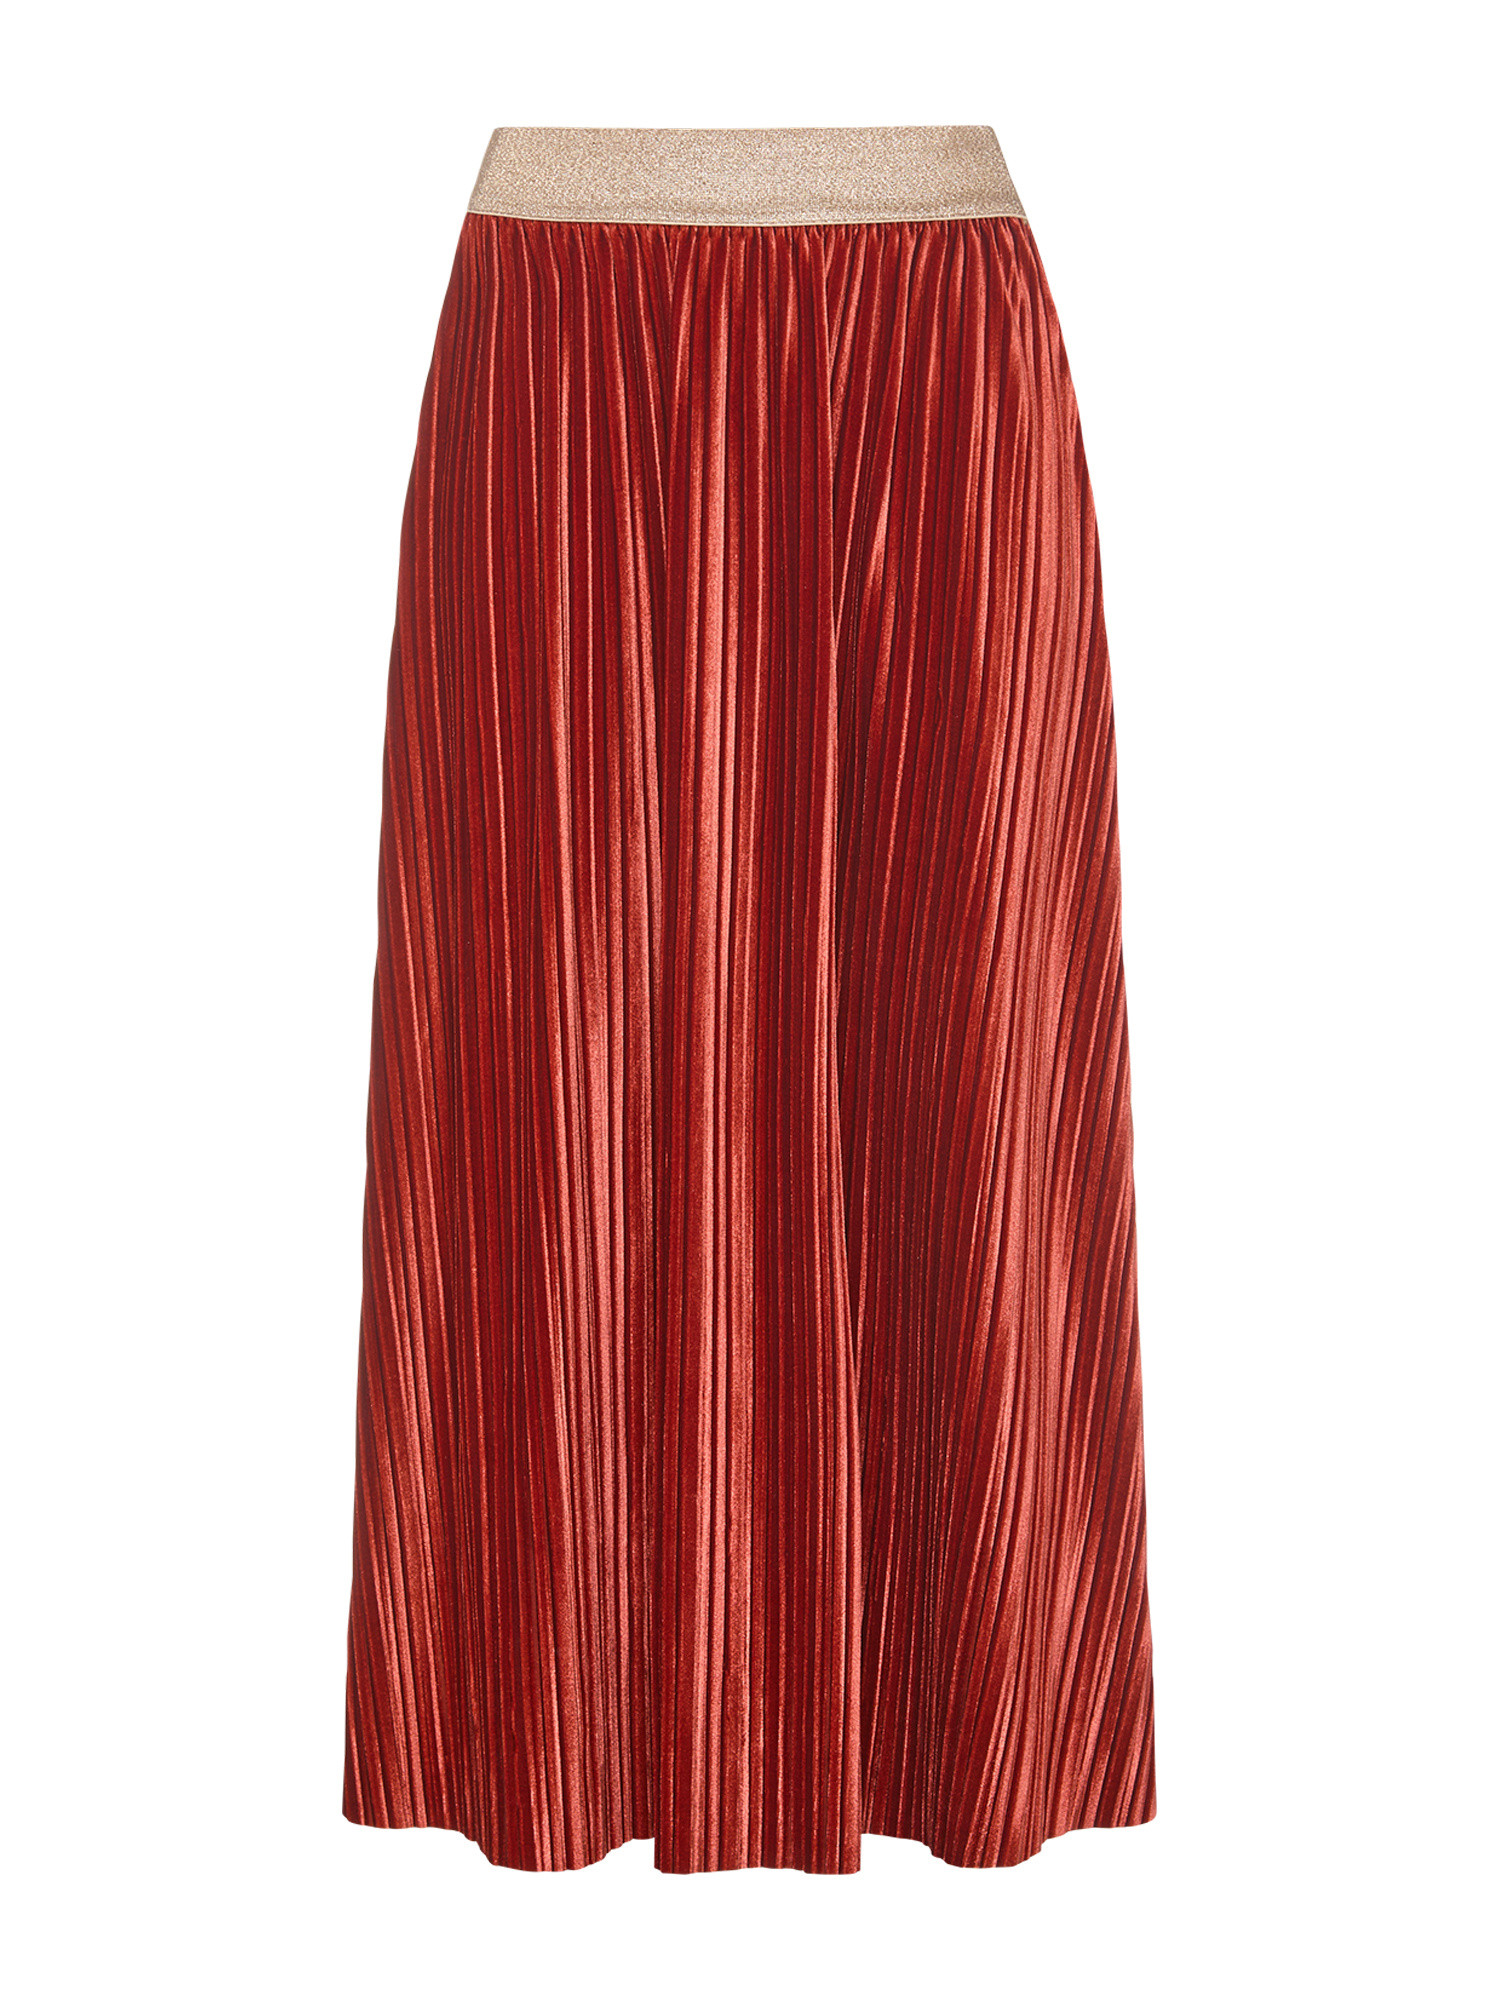 Koan Collection Расклешенная юбка из бархата с плиссированным эффектом., бледно-коричневый